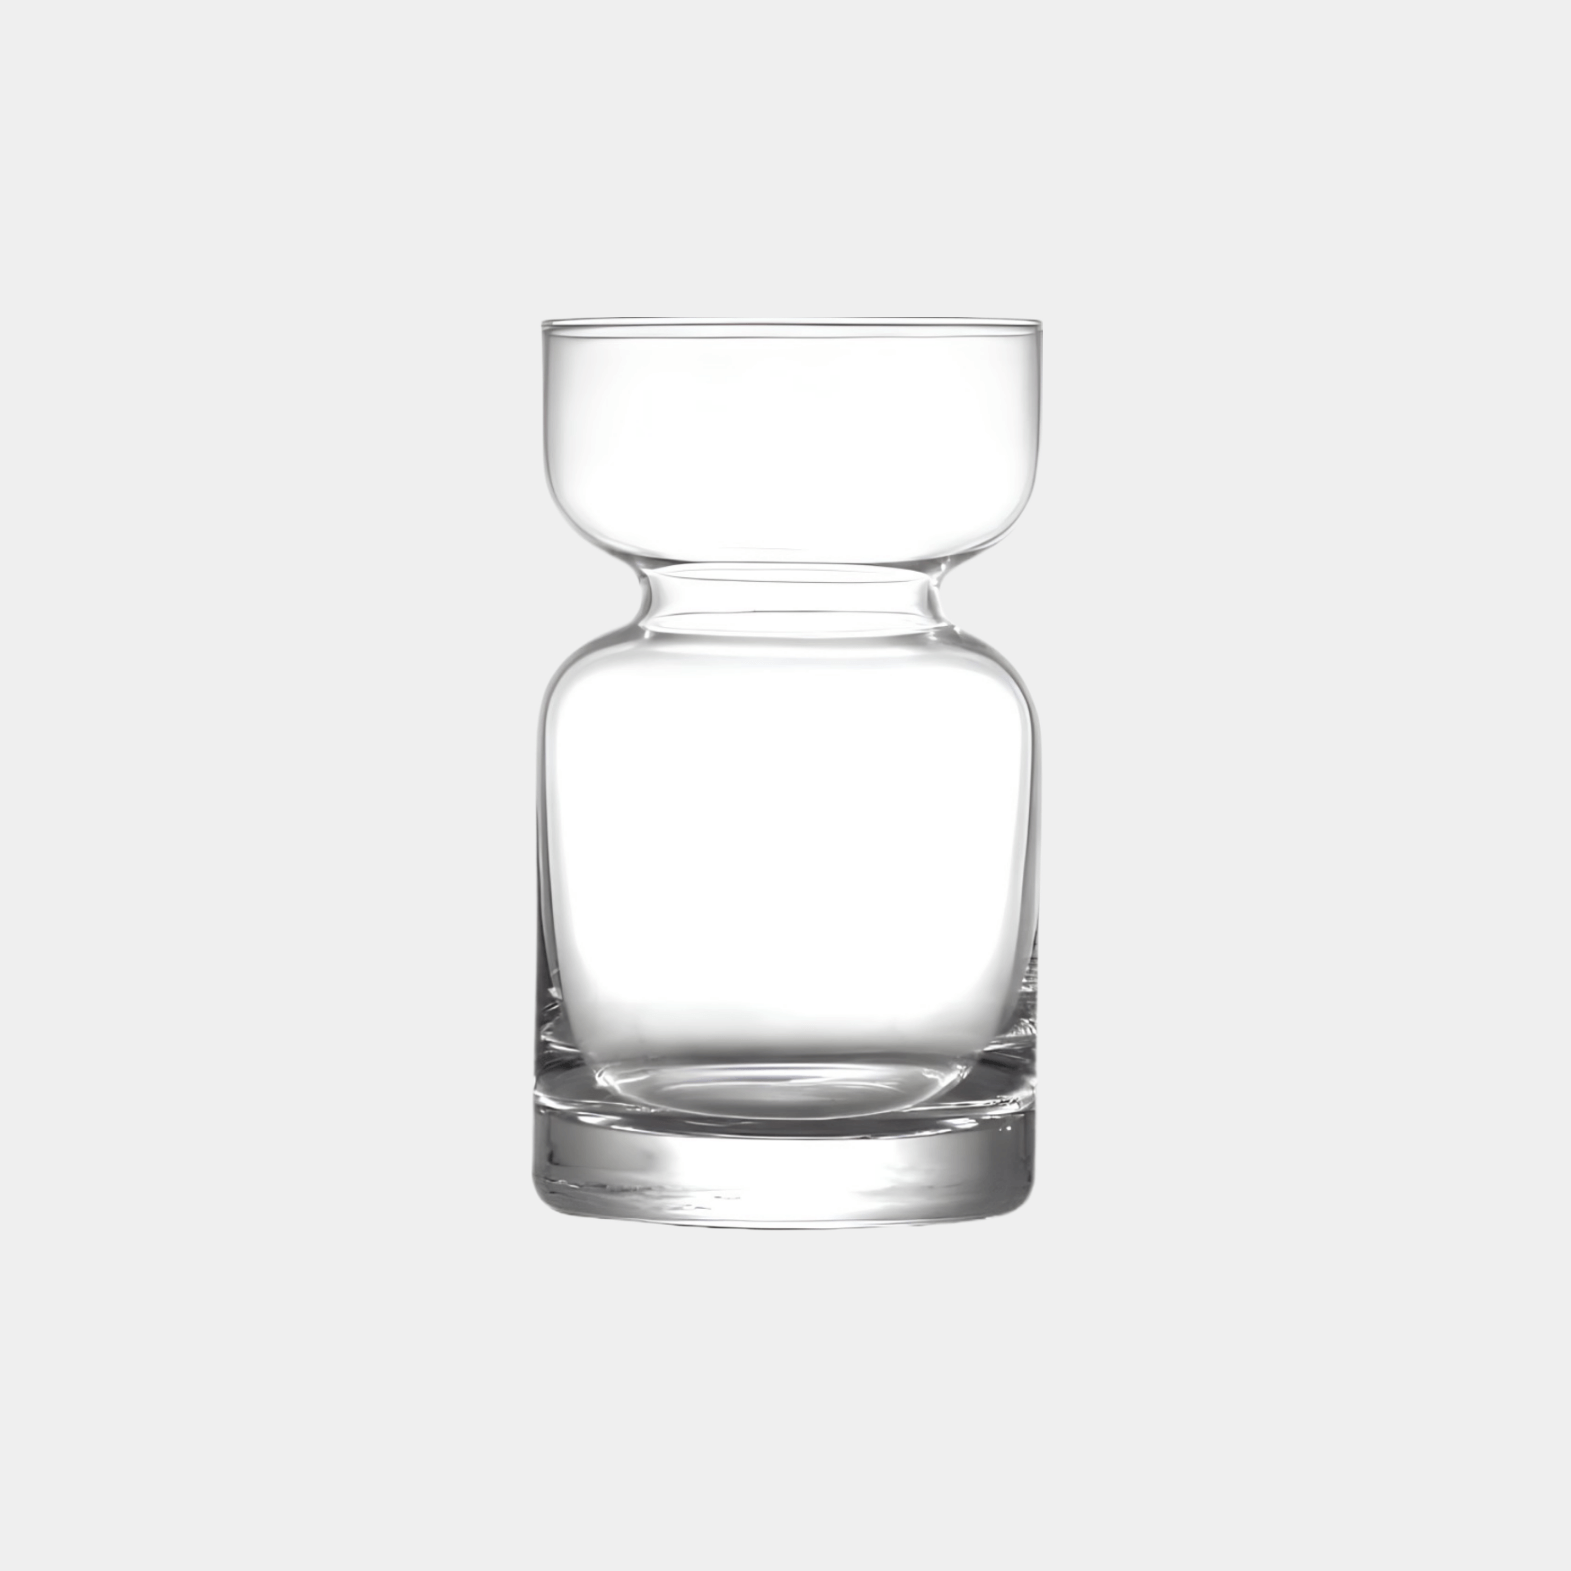 Ein ästhetisches London Sandscape Glas, präsentiert vor einem eleganten grauen Hintergrund. Luxuriöses Trinkglas mit markantem Design und zeitloser Eleganz. Handgefertigt für ein exquisites Trinkerlebnis mit heißen oder kalten Getränken. Perfekt für Cocktails, Kaffee oder erfrischende Getränke. Ideal für den täglichen Gebrauch oder besondere Anlässe. Stilvoll und zeitlos gestaltet für anspruchsvolle Genießer.